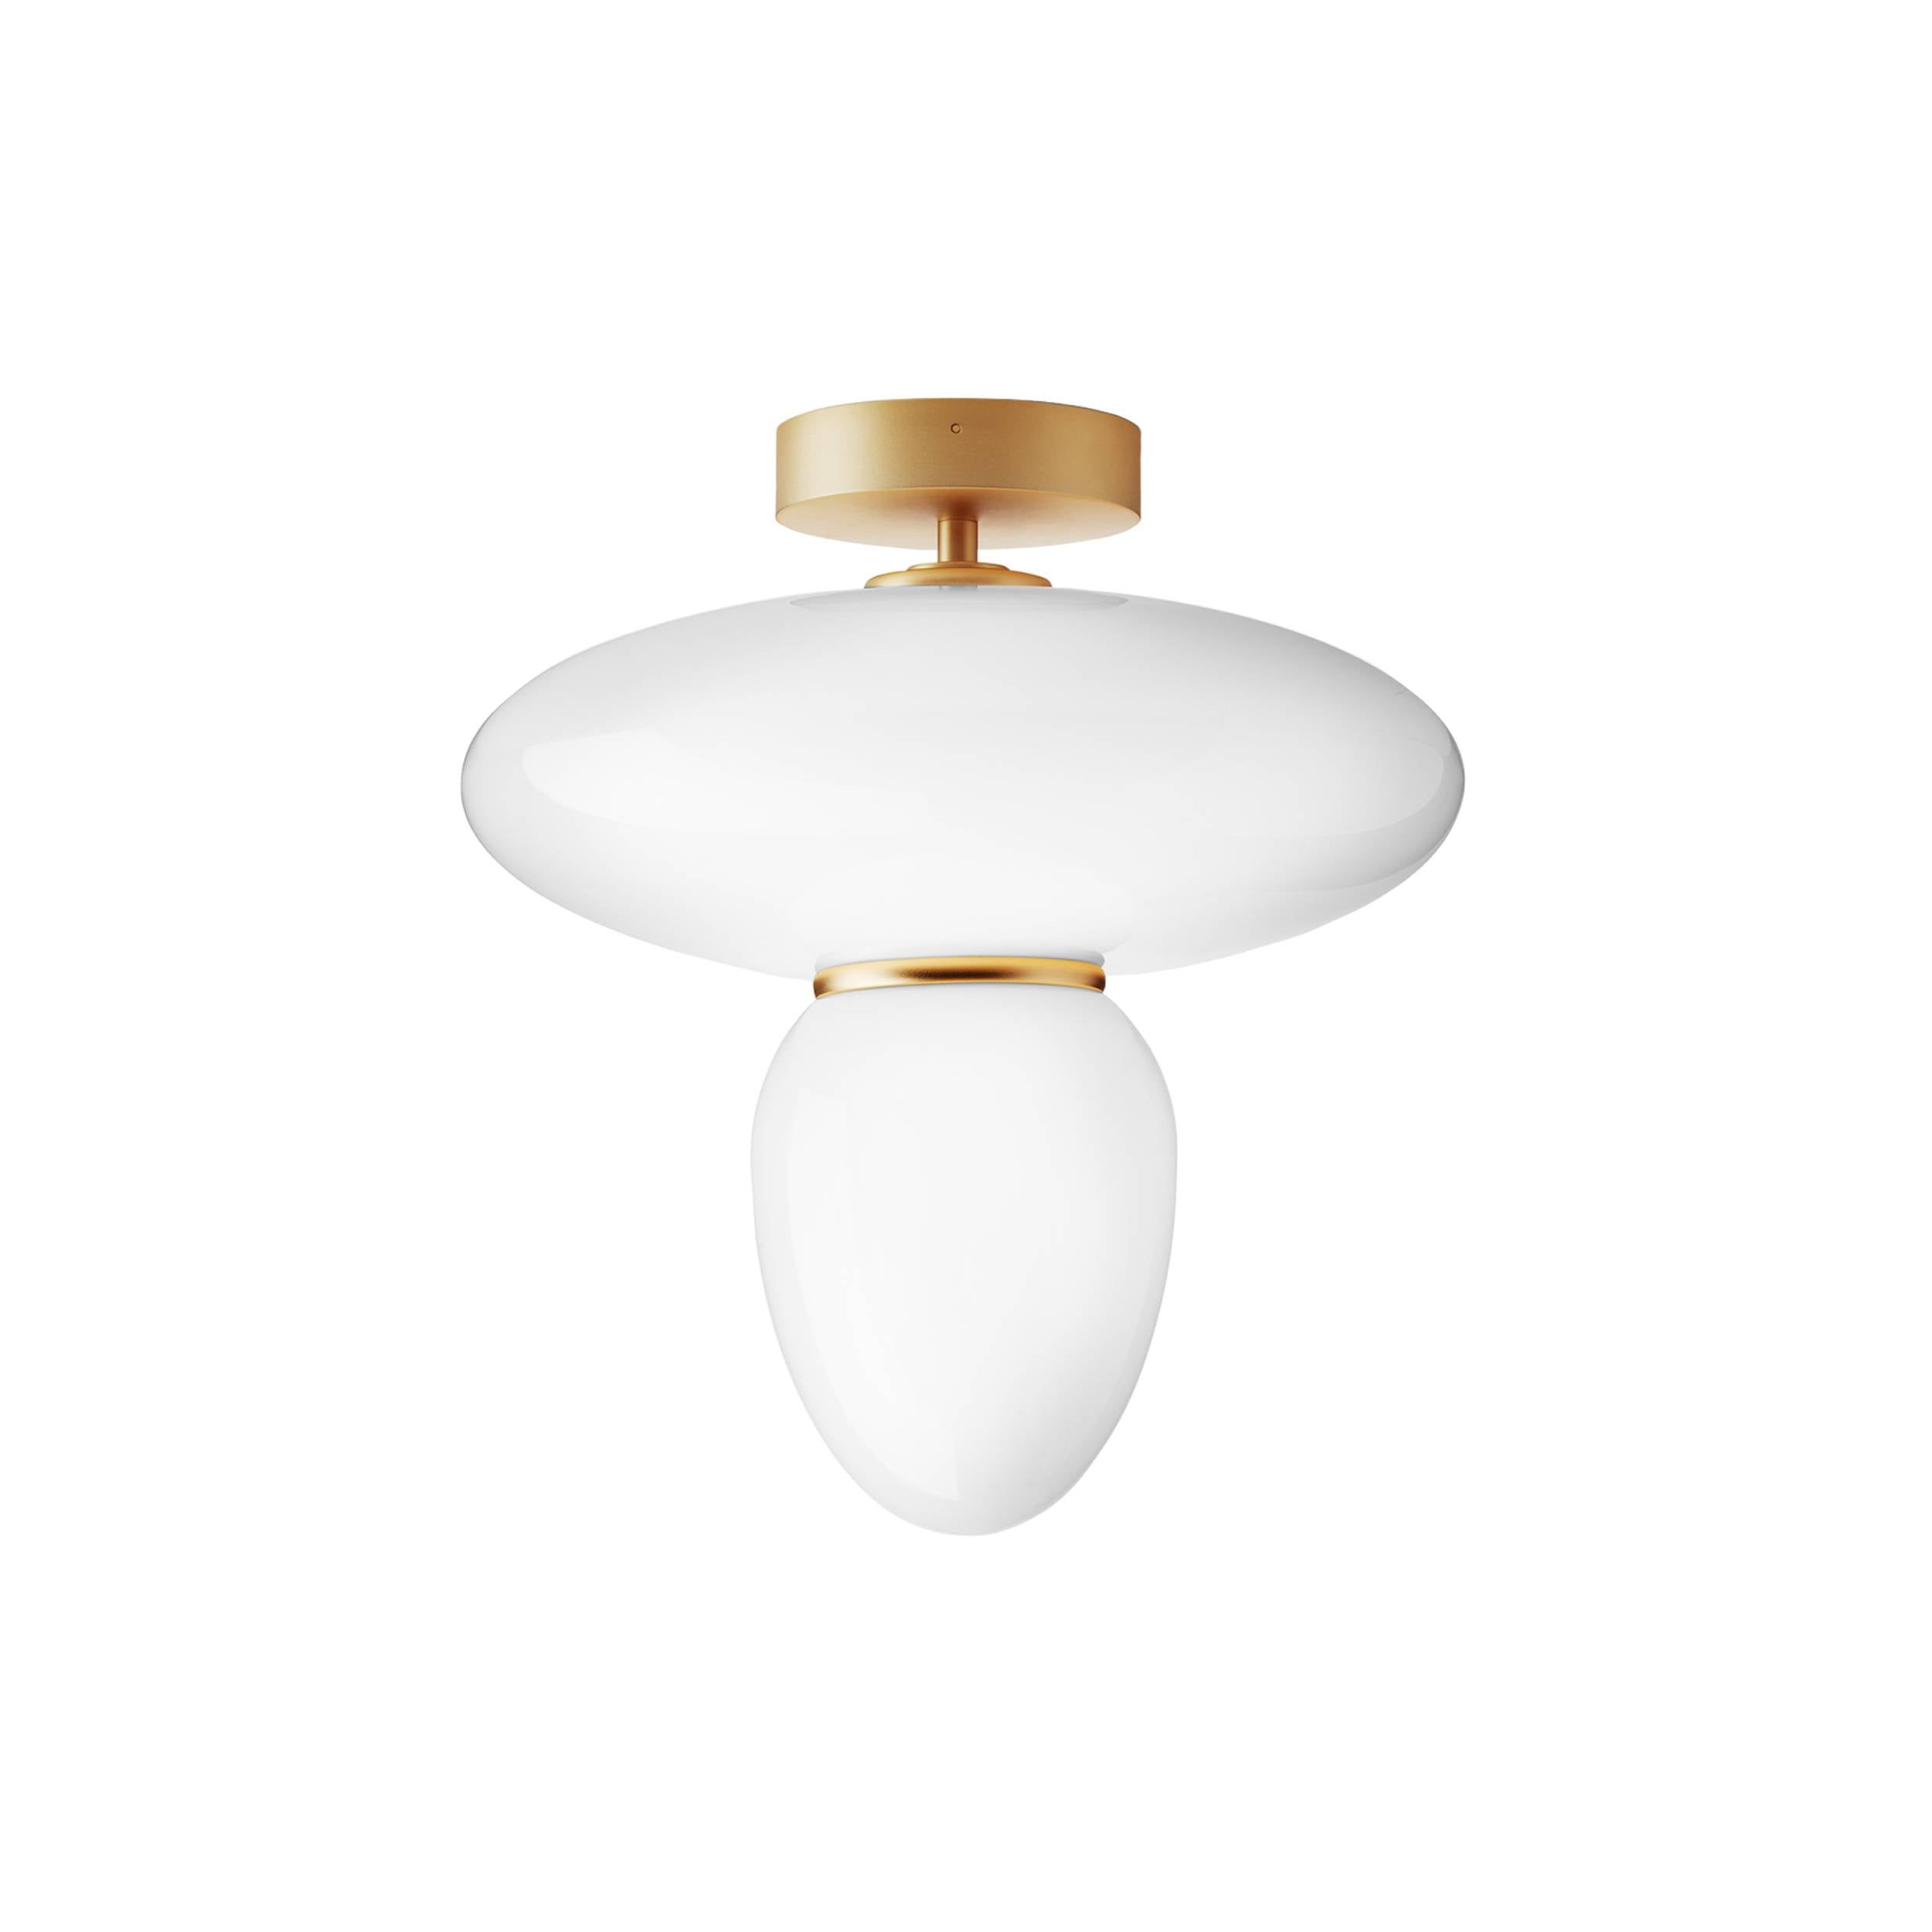 Rizzatto 42 Ceiling Lamp: Satin Brass + Gold